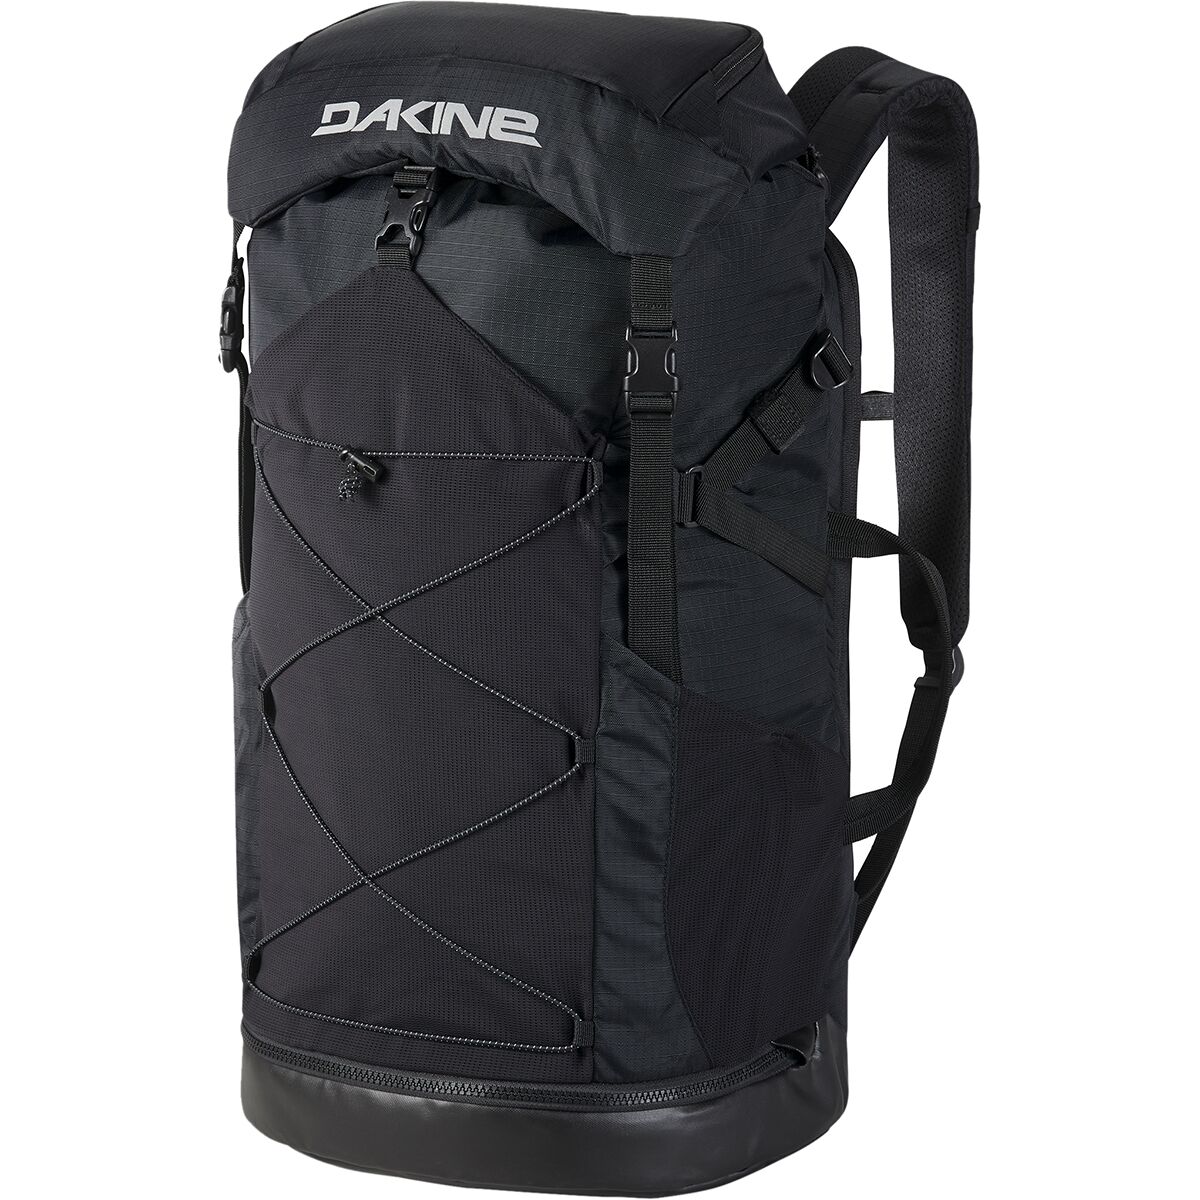 DAKINE Mission Surf Dlx Wet/Dry 40L Backpack